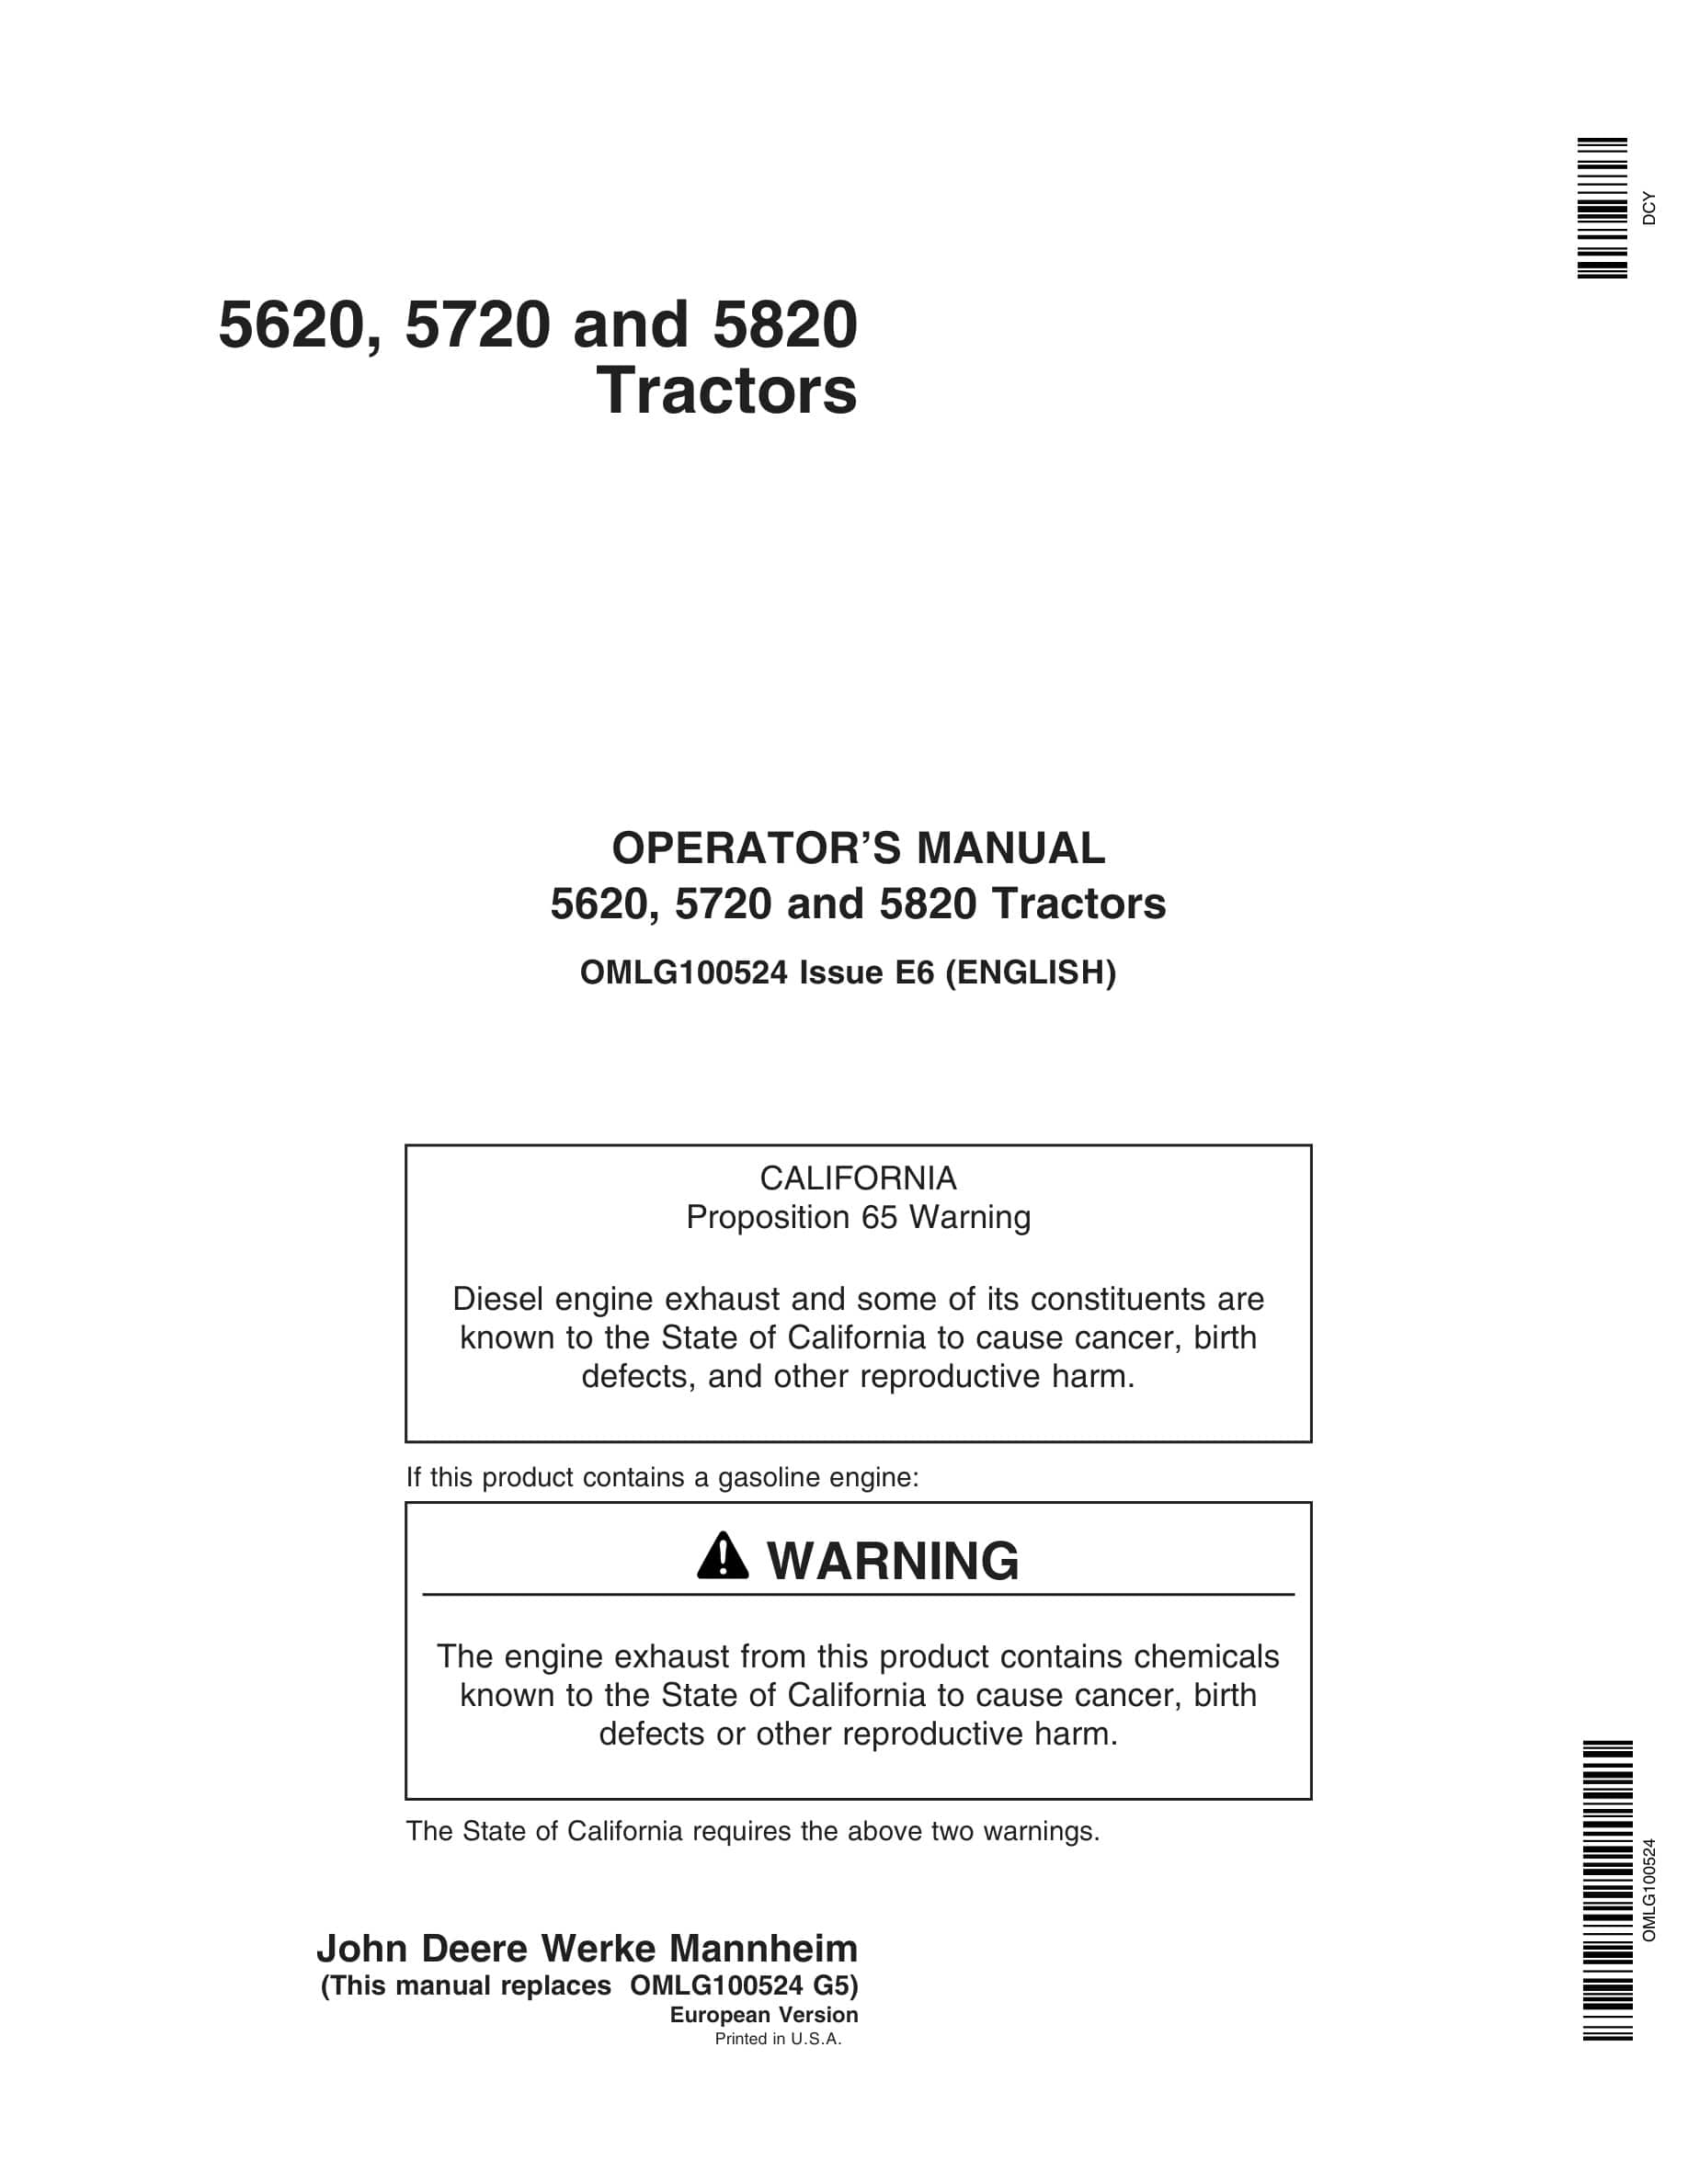 John Deere 5620, 5720 And 5820 Tractors Operator Manuals OMLg100524-1